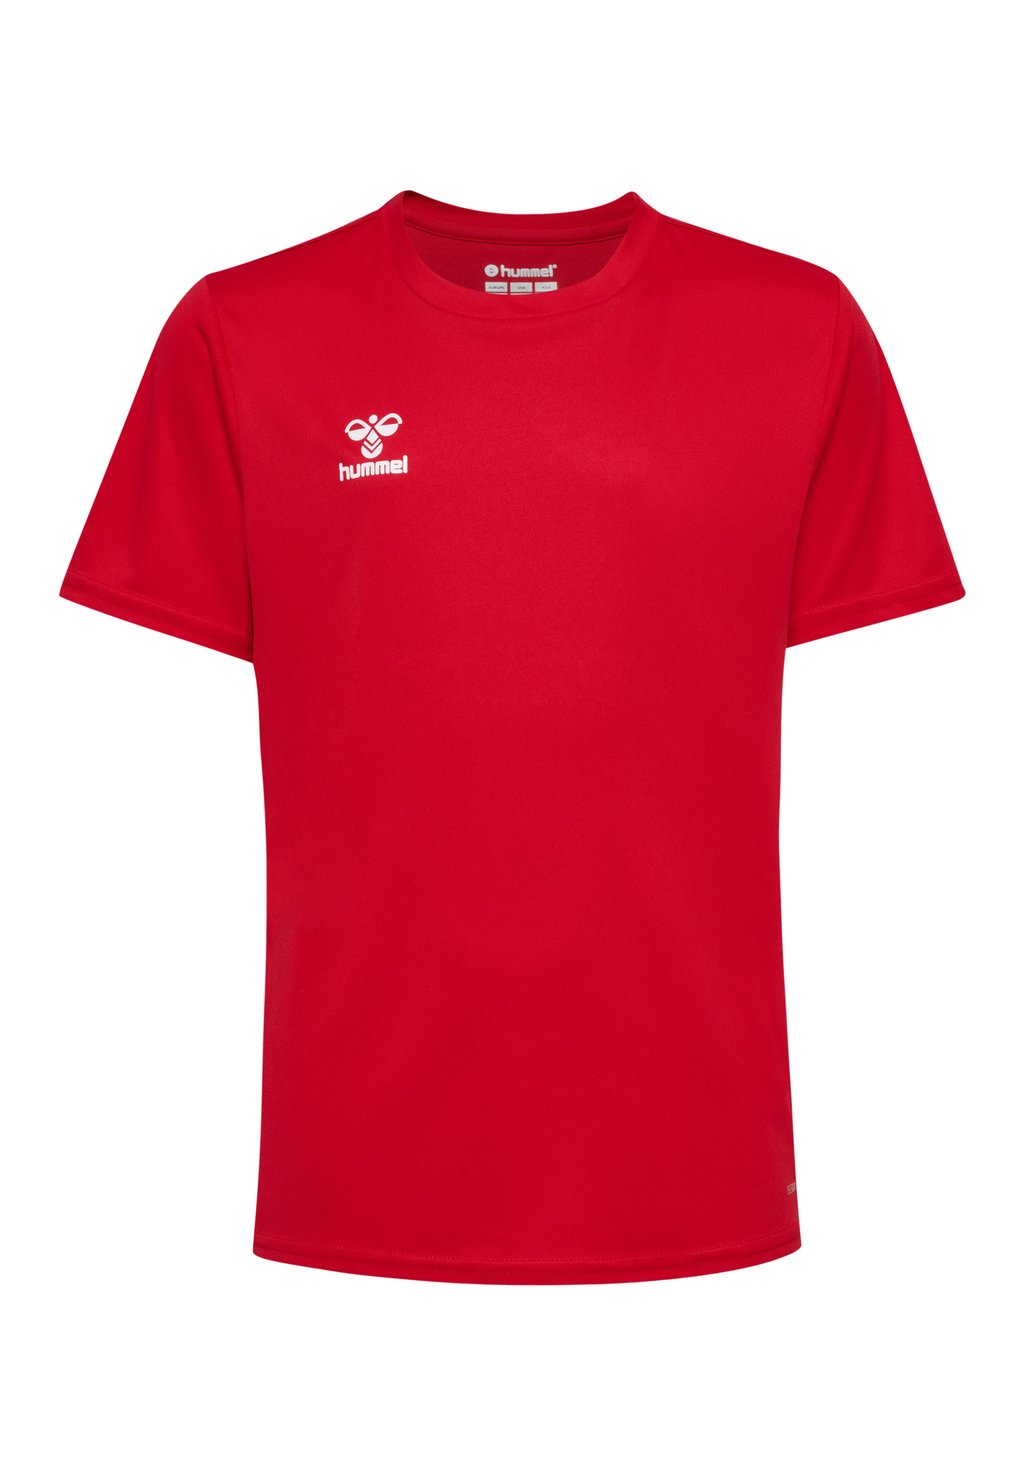 Футболка базовая ESSENTIAL SS Hummel, цвет true red футболка базовая texas city mcs цвет true red